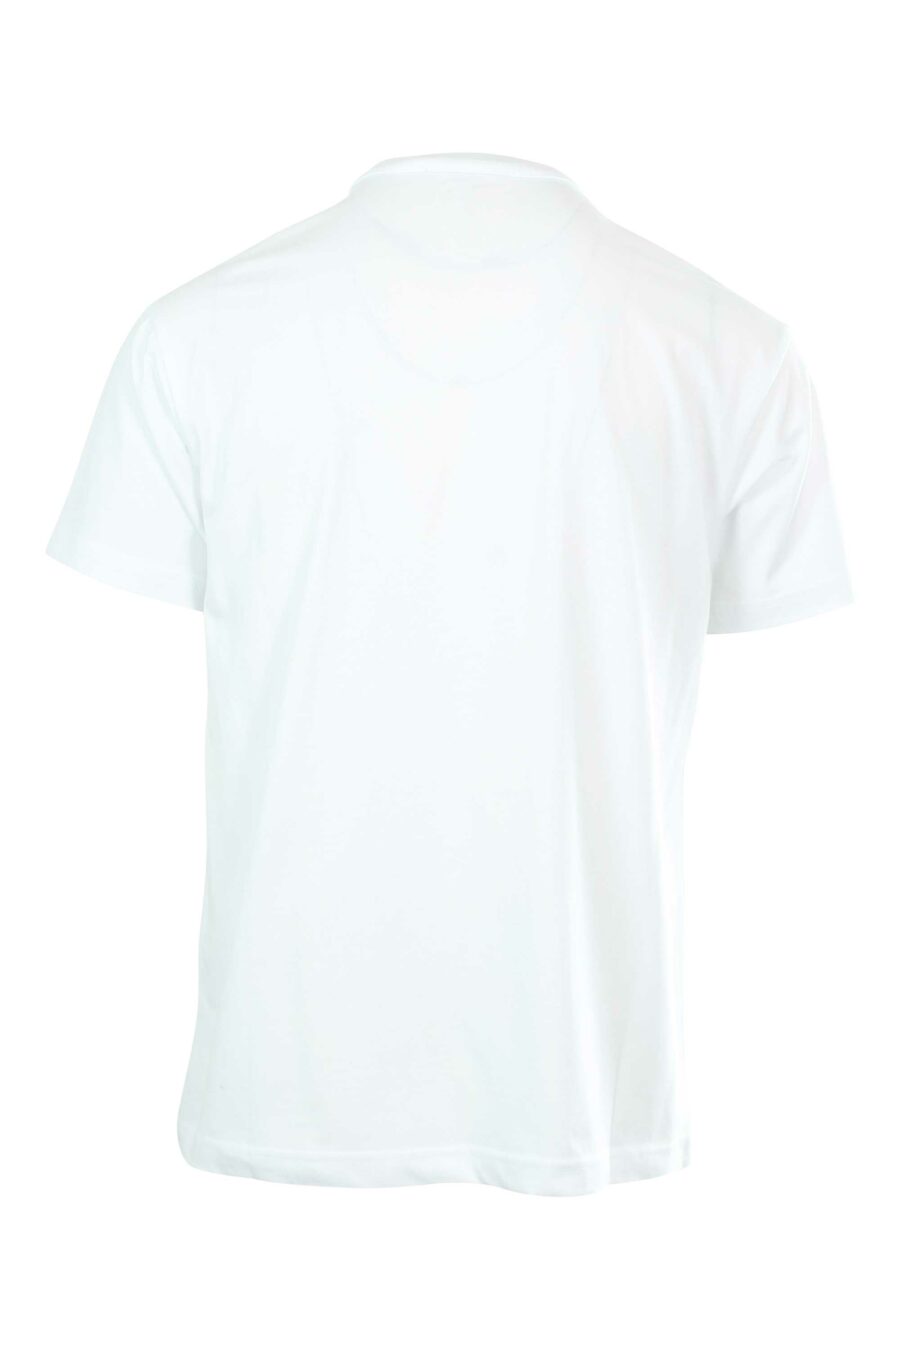 Camiseta blanca con maxilogo en contraste - 8052019235371 2